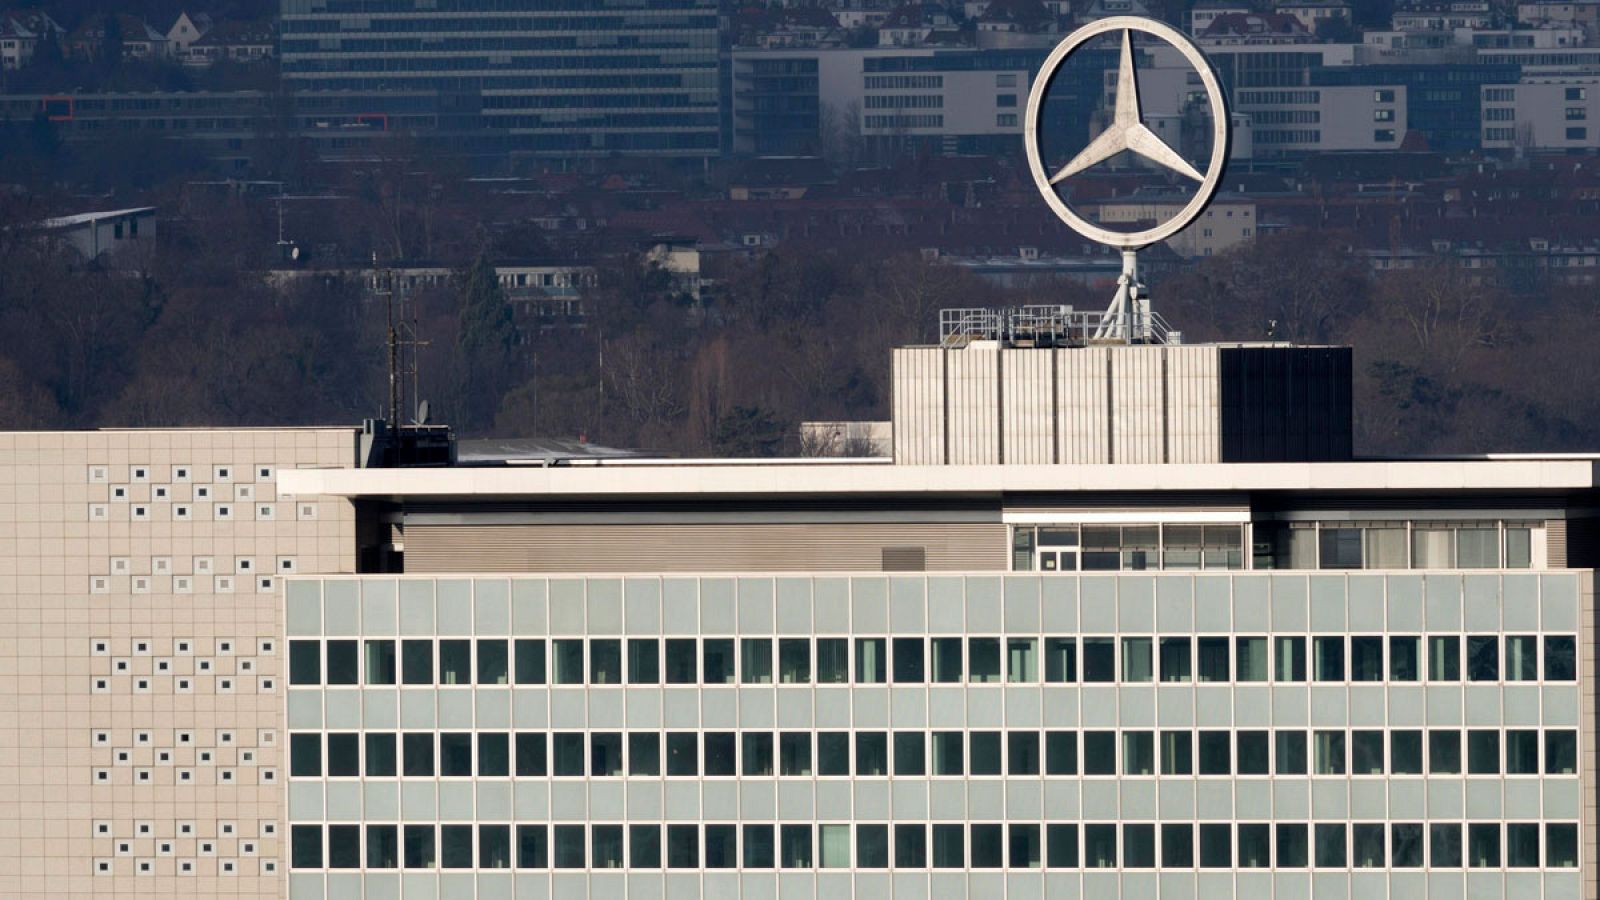 Foto de archivo del logo de la estrella en lo alto de una sede de la compañía automovilística Daimler AG en Stuttgart